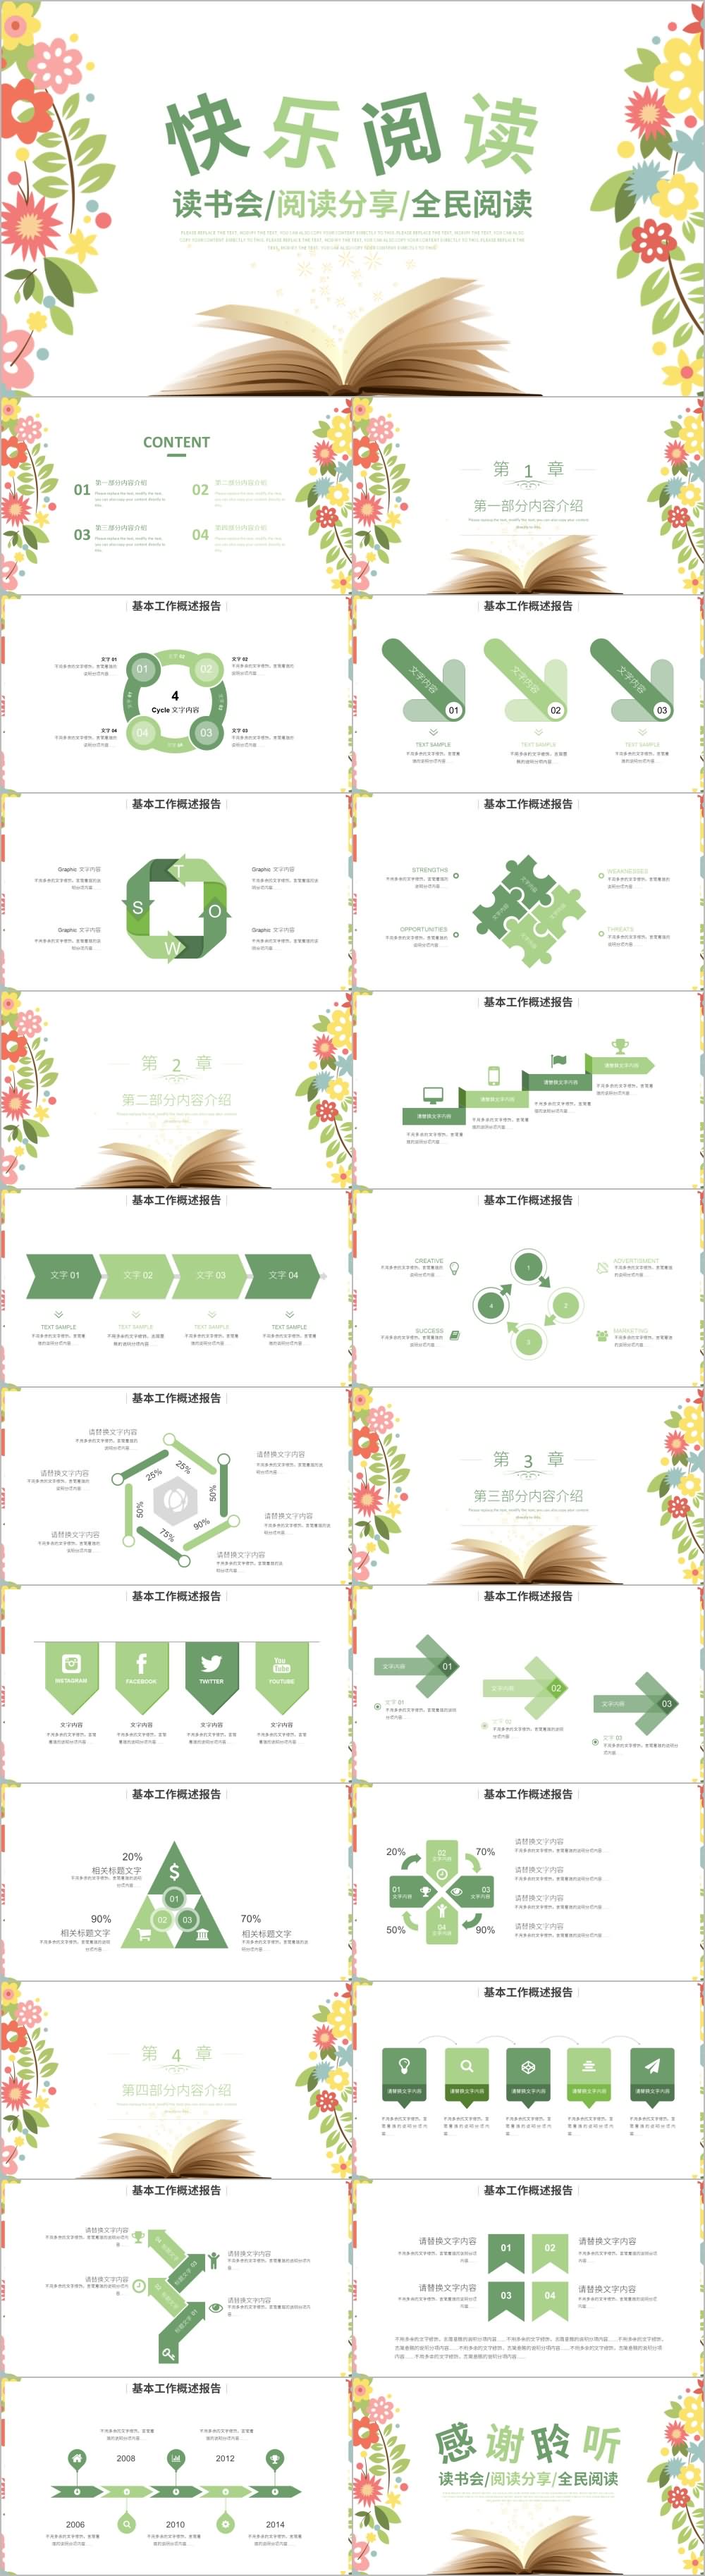 绿色清新花朵快乐阅读教育培训PPT模板